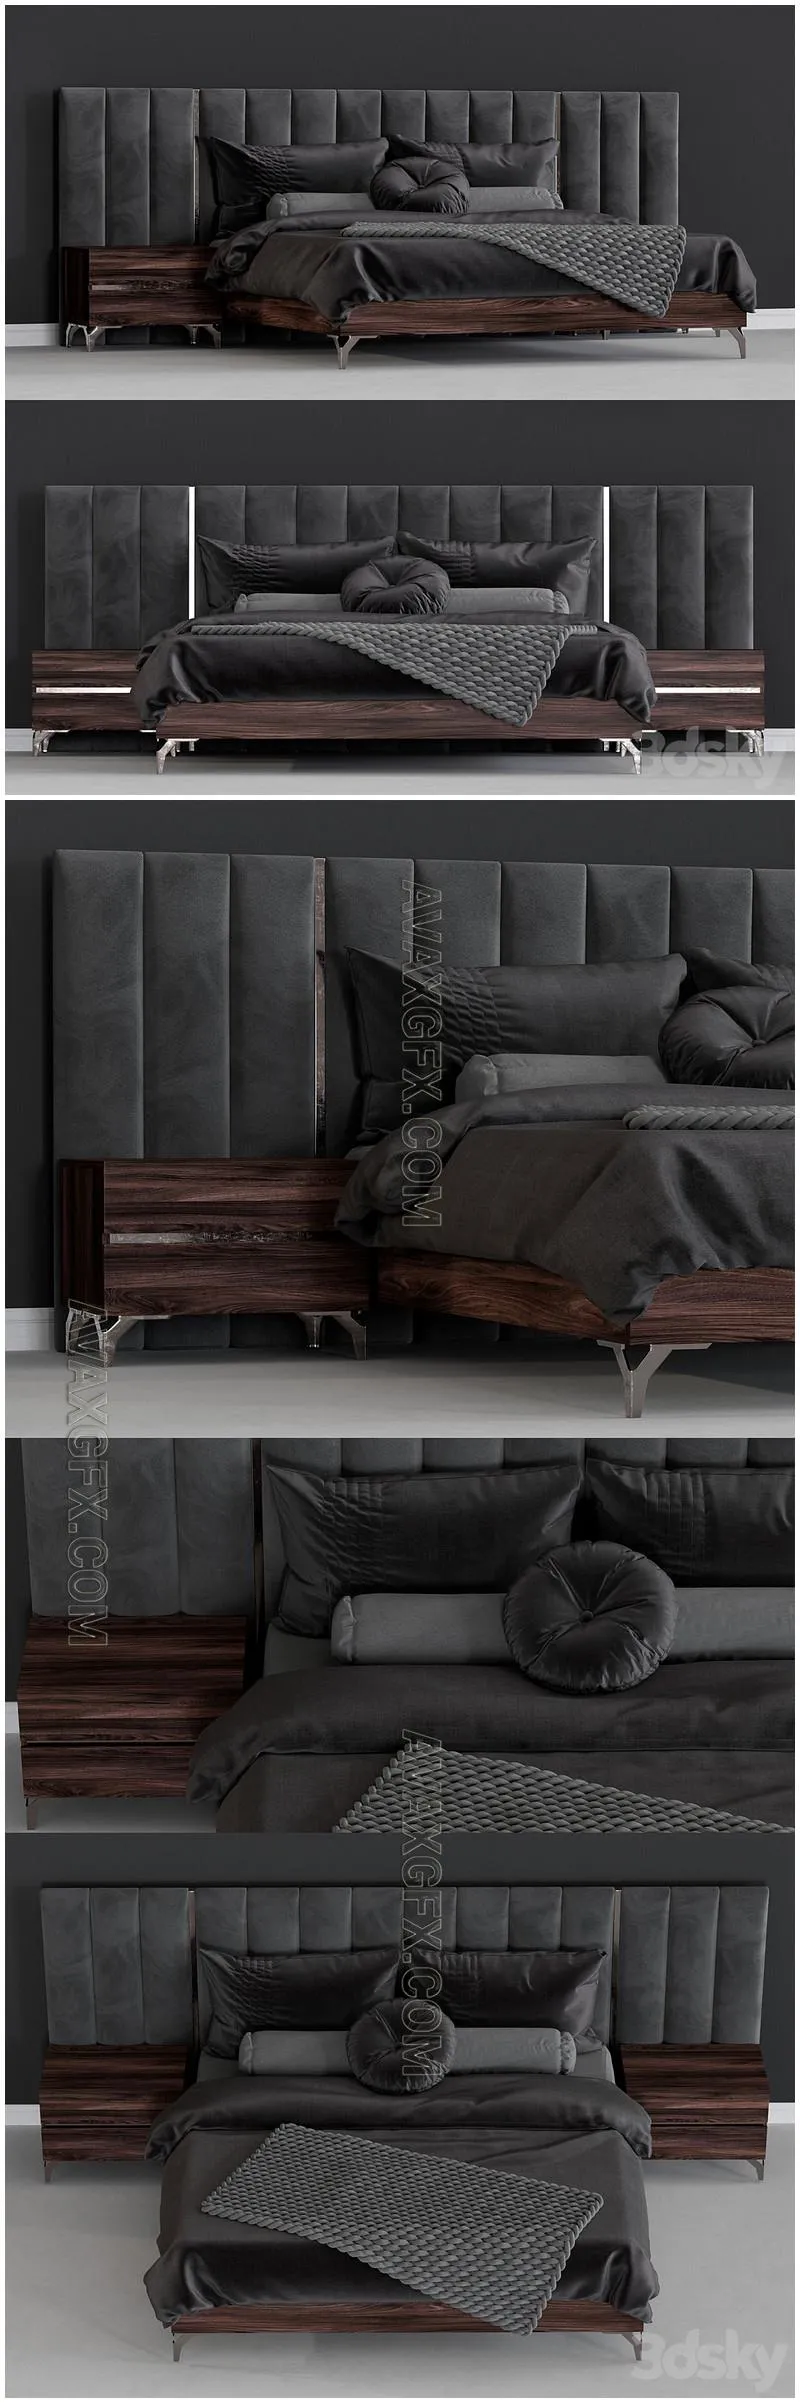 LA furniture store modern bed  - 3D Model